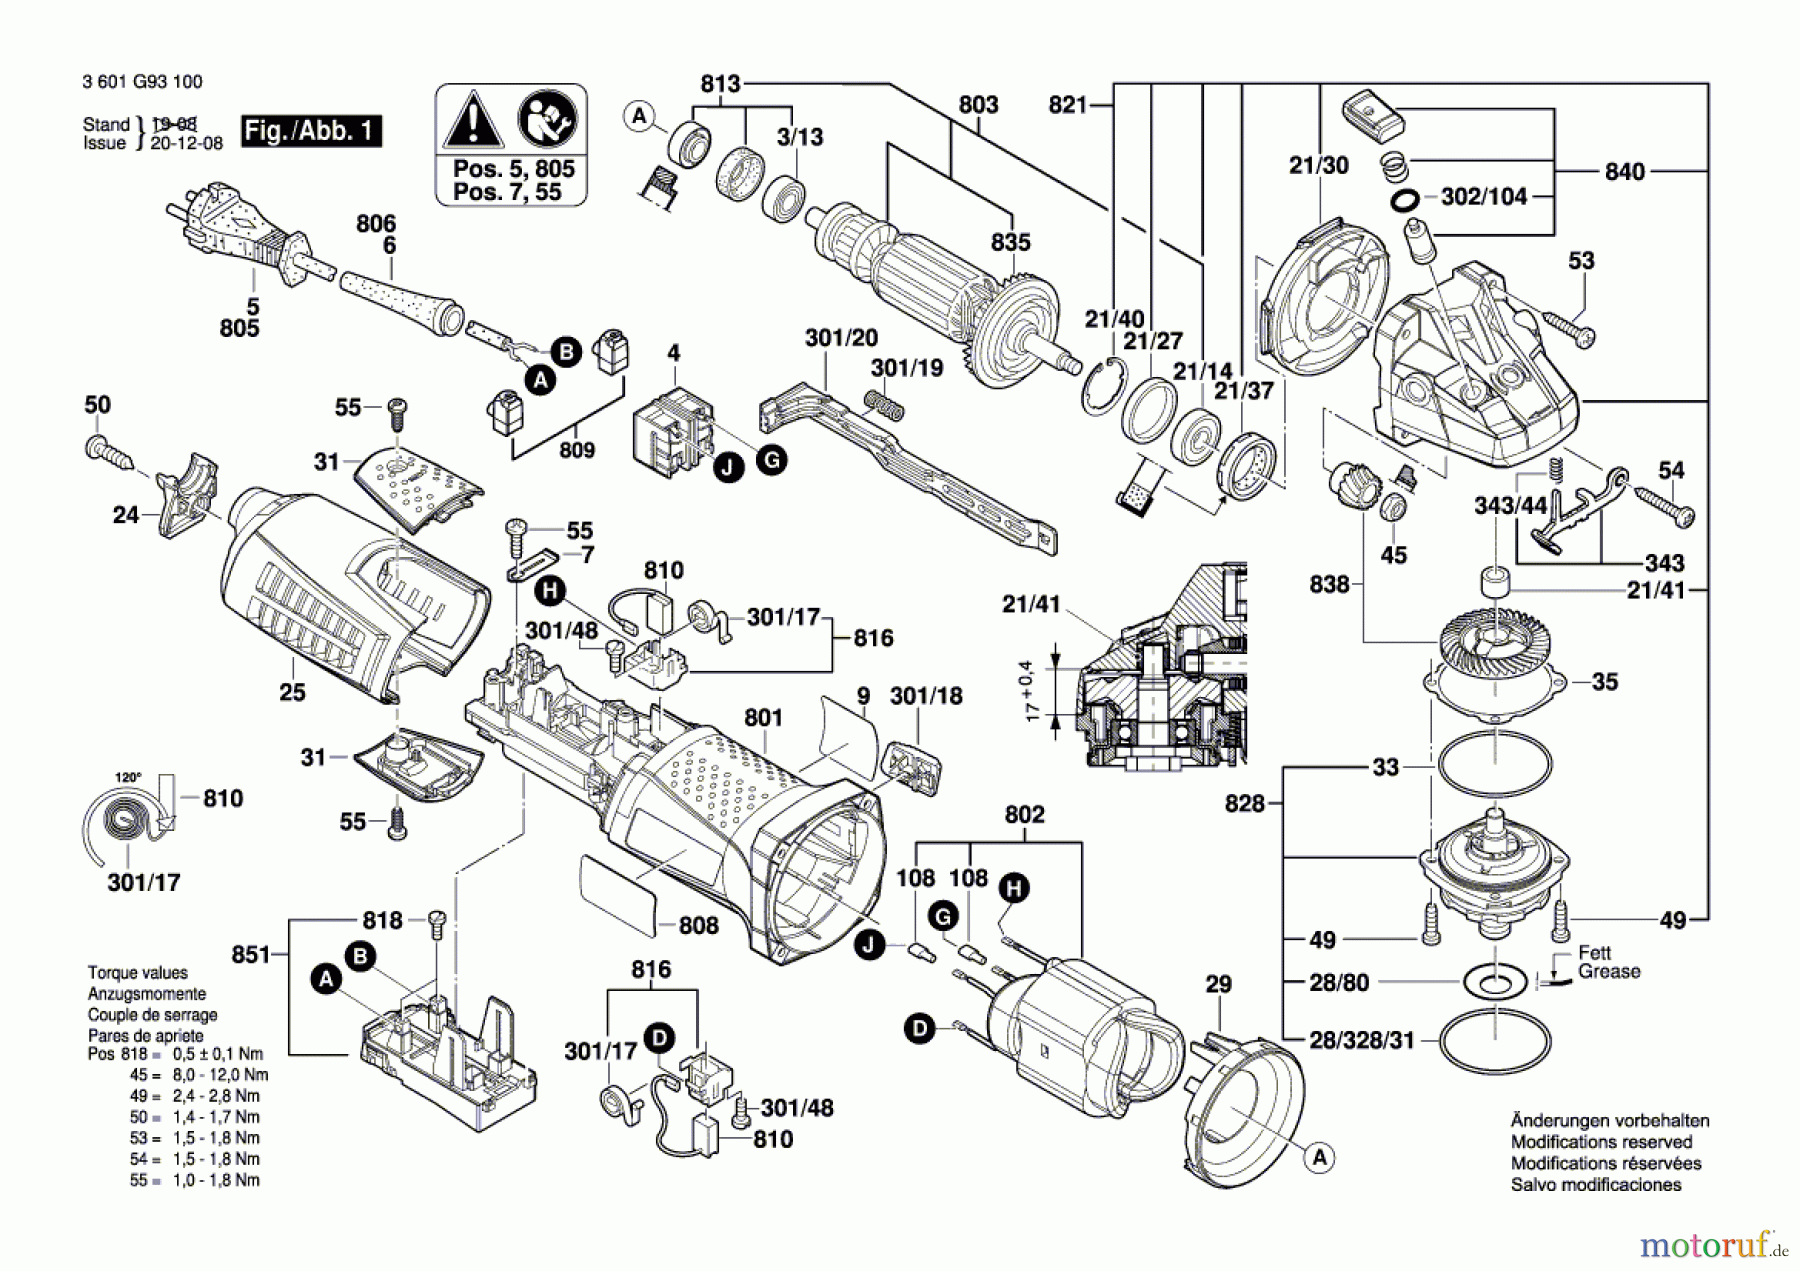  Bosch Werkzeug Winkelschleifer GWS 12-125 CIX Seite 1